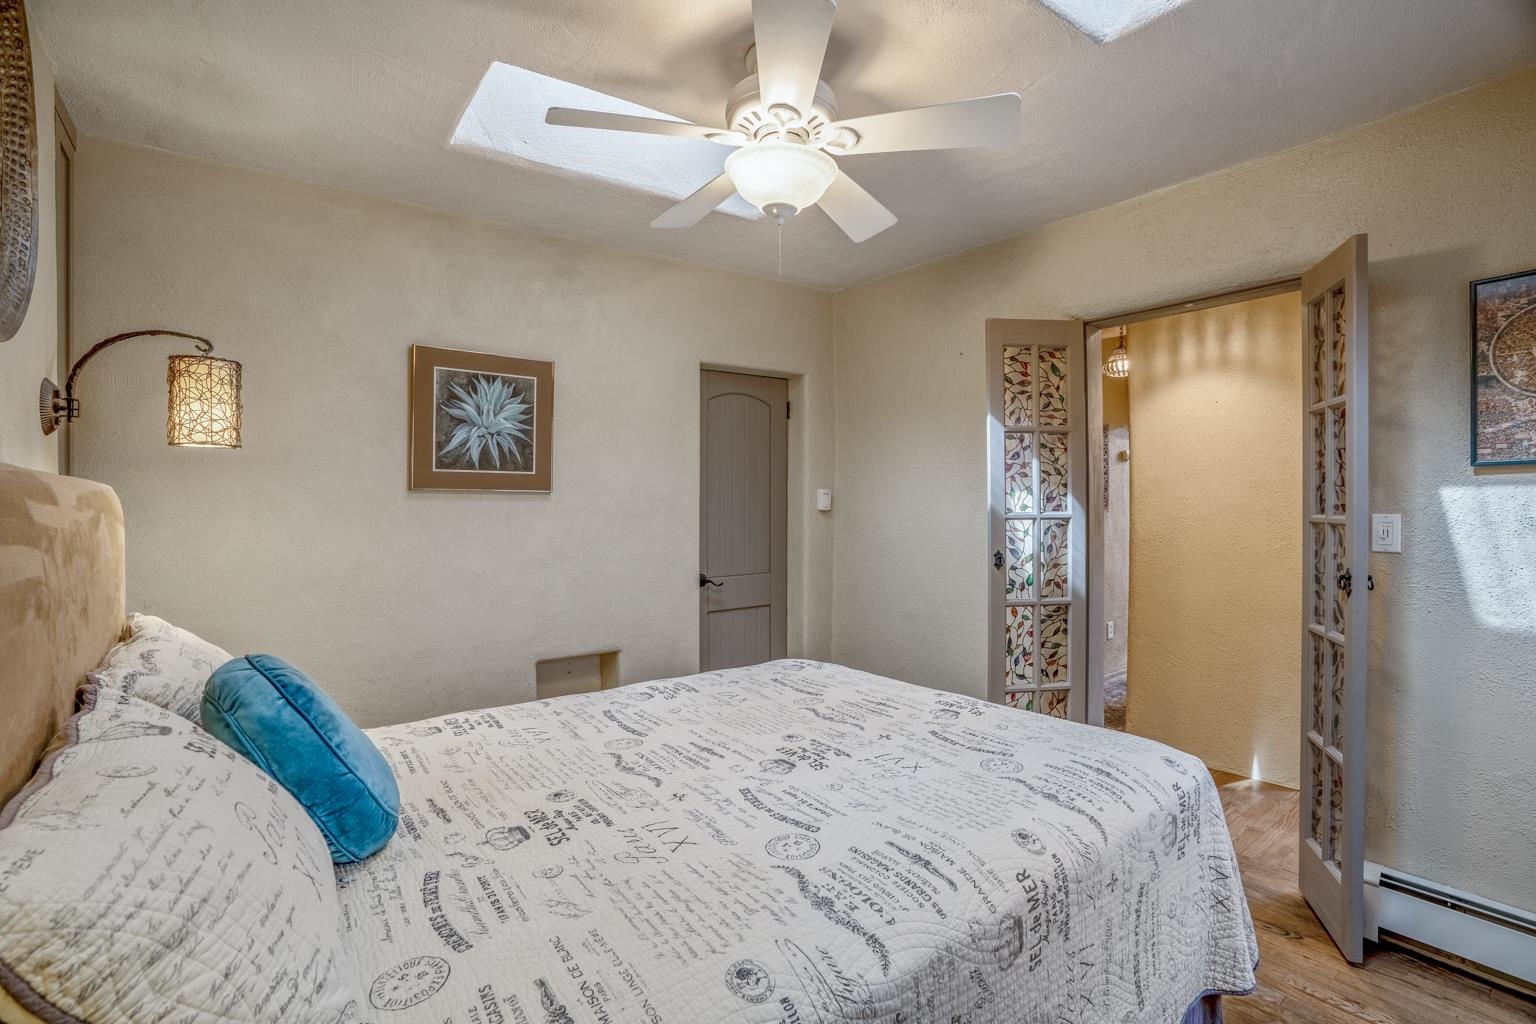 134 Buena, Santa Fe, New Mexico 87505, 3 Bedrooms Bedrooms, ,3 BathroomsBathrooms,Residential,For Sale,134 Buena,202200916